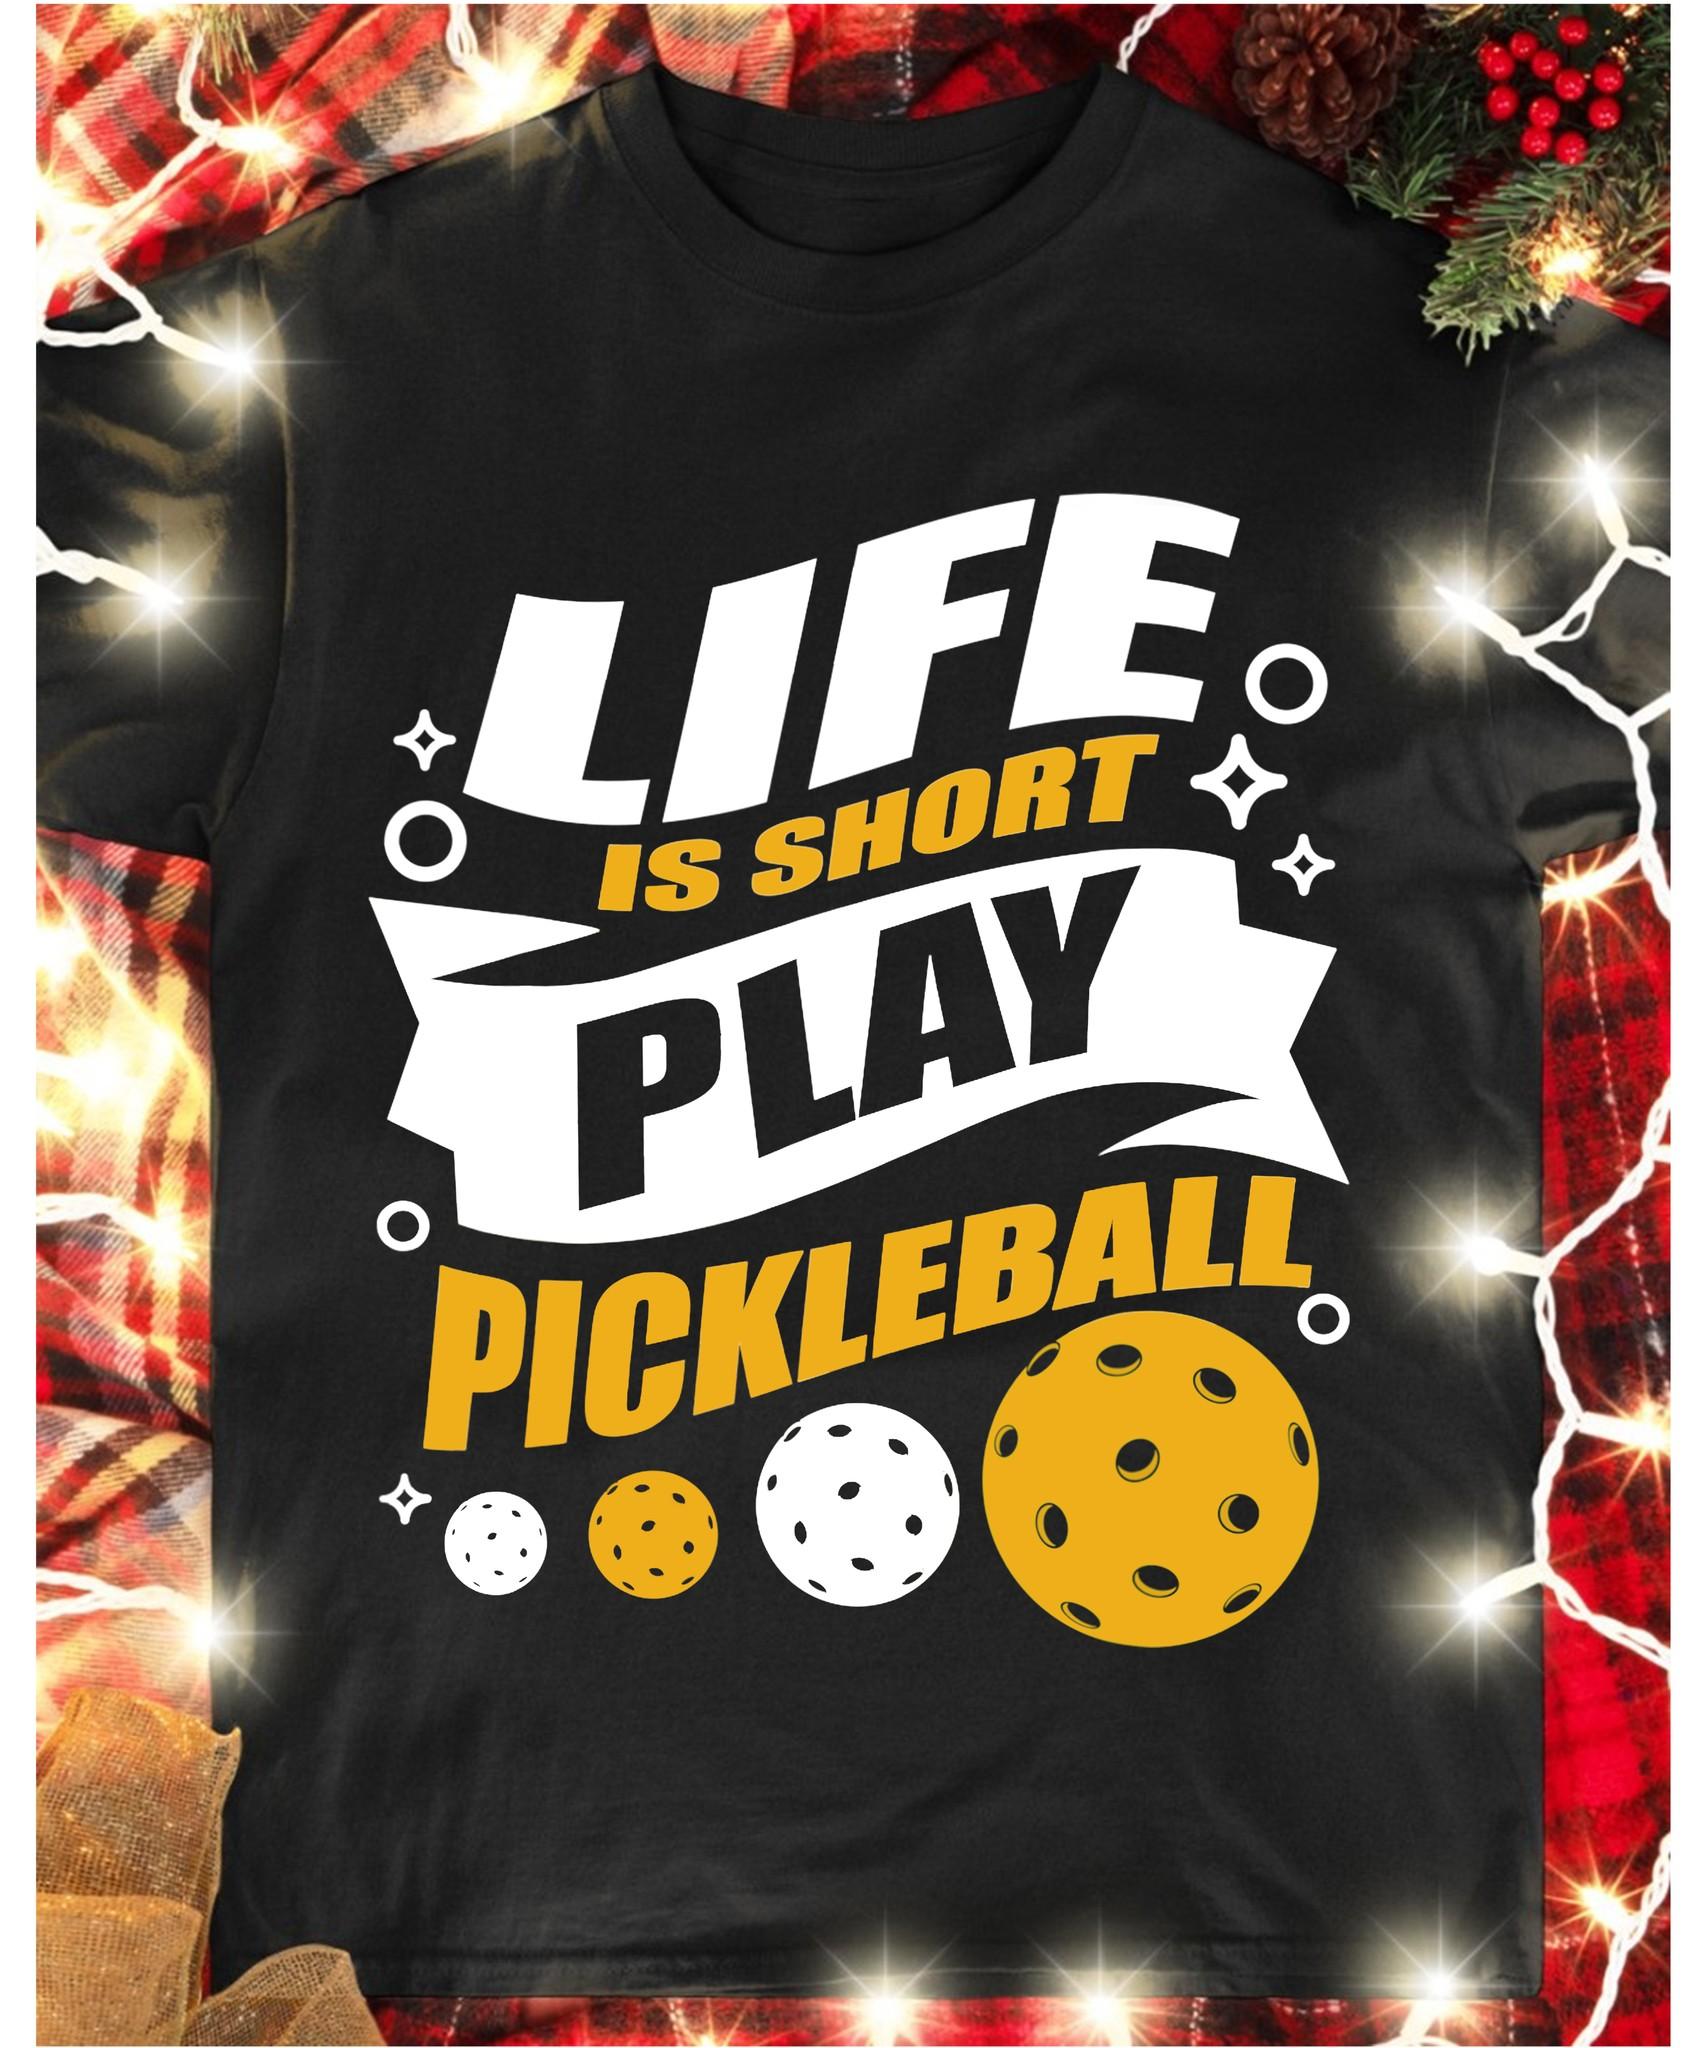 Life is short, play pickleball - T-shirt for pickleballer